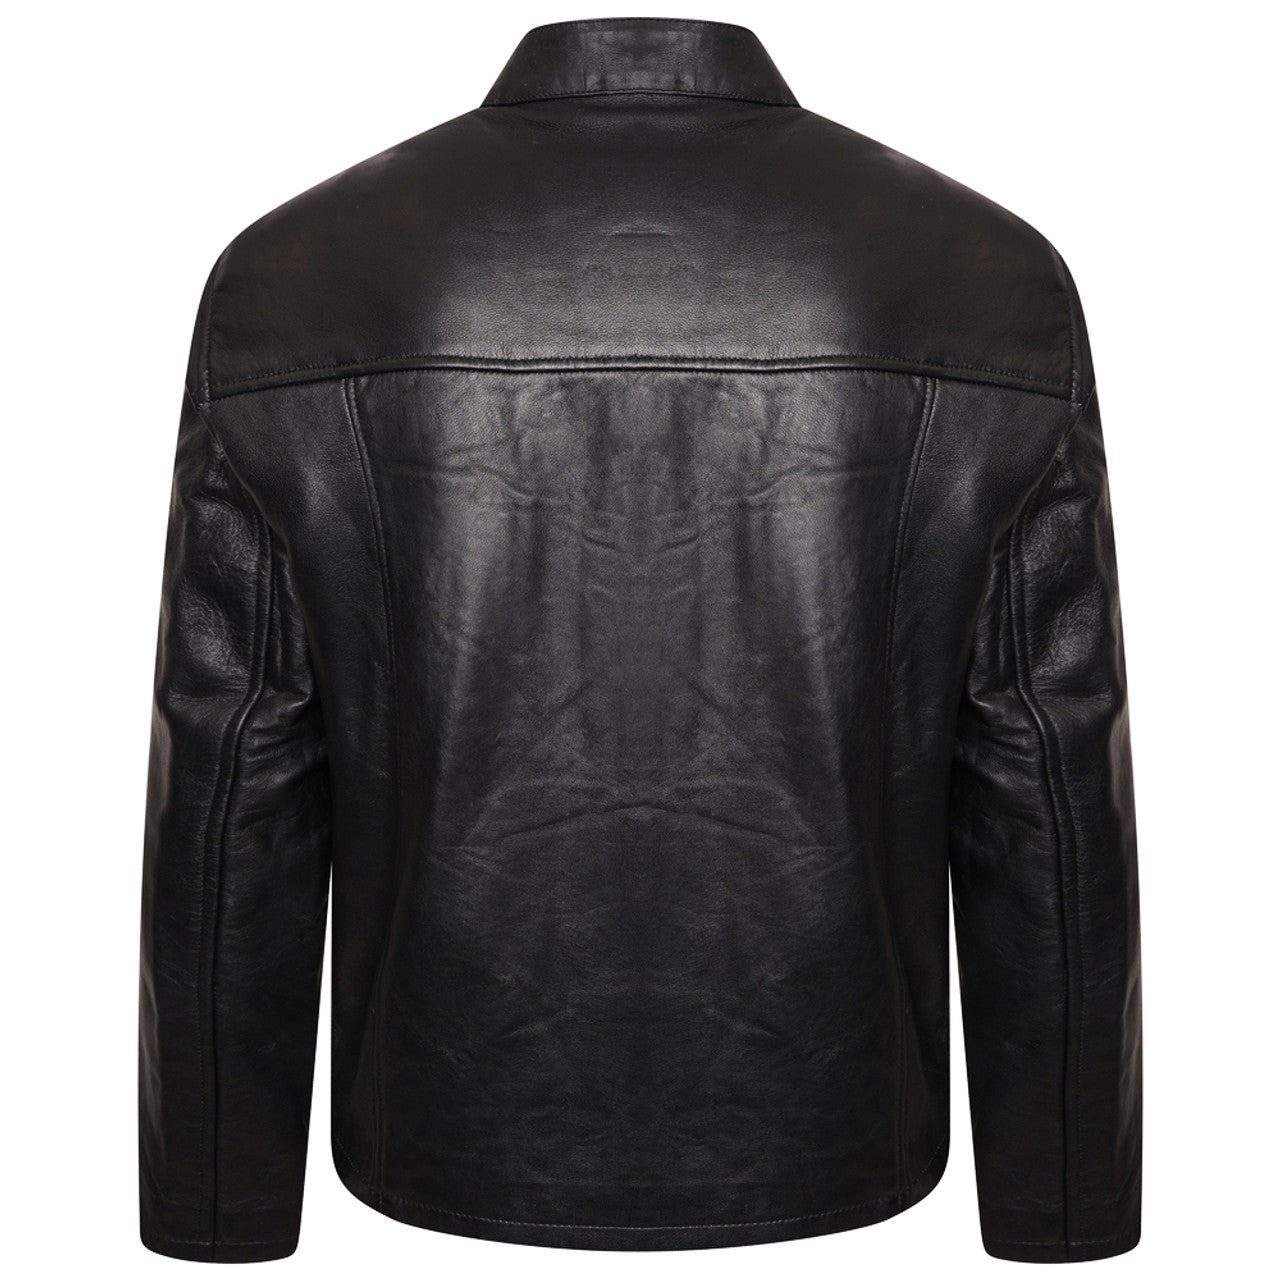 black biker leather jacket Le Mans Steve McQueen Black Leather Jacket winter jacket for men stylish black jacket genuine leather jacket celebrity leather jacket